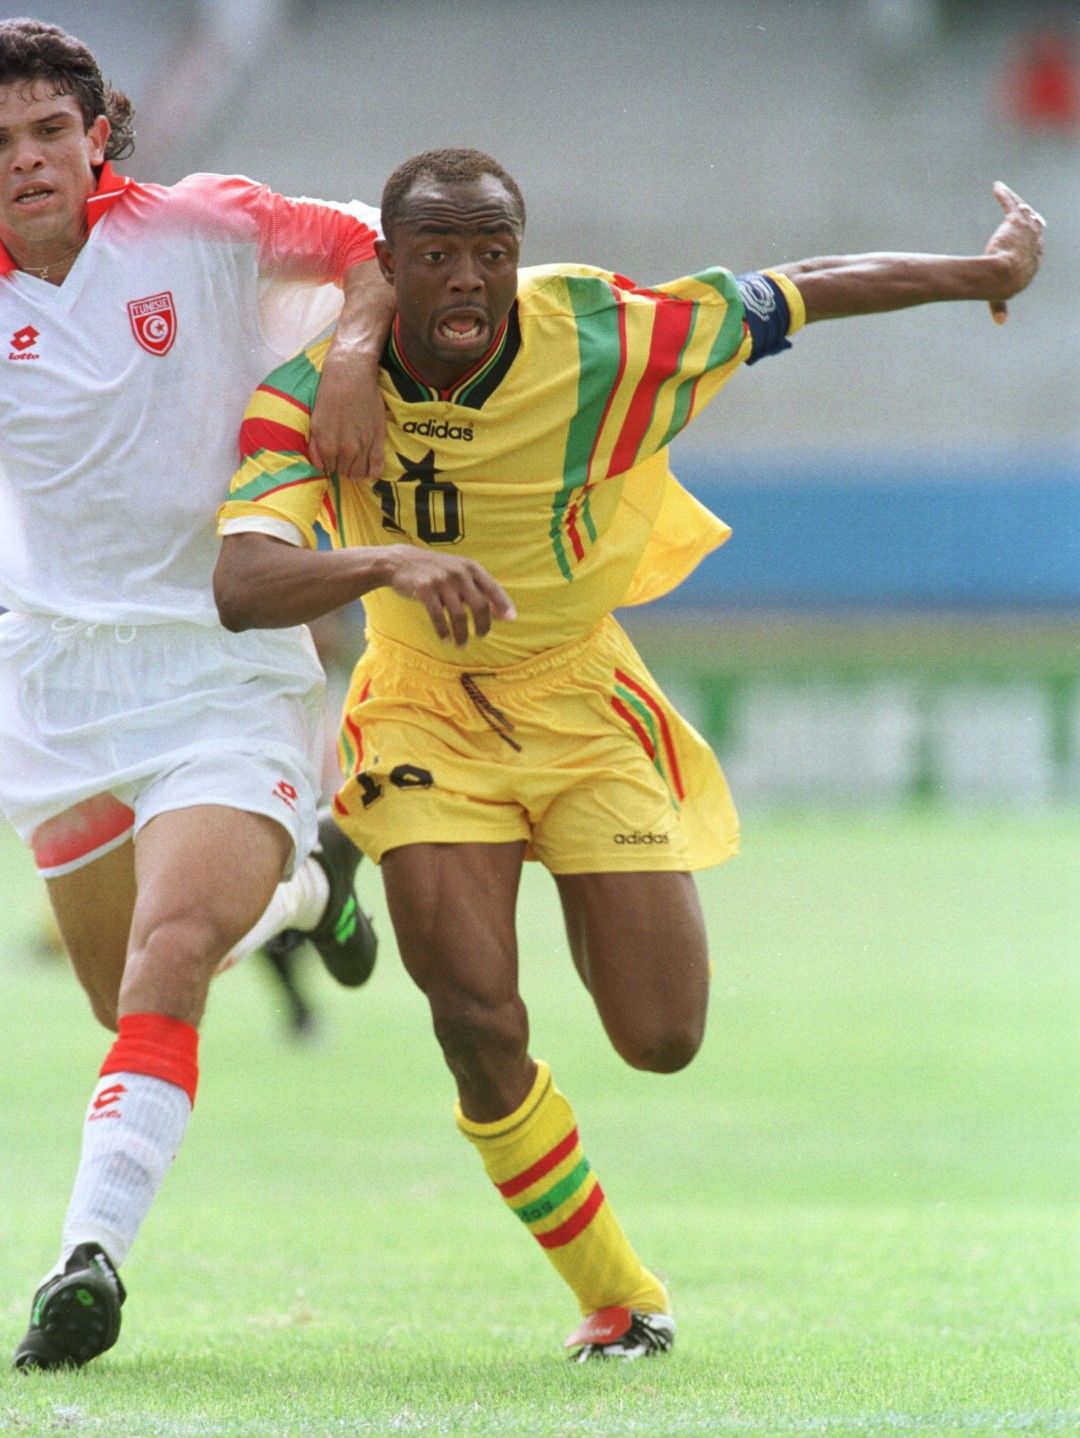 Абеди Пеле е смятан за най-великия африкански играч. Той неслучайно носи прякора Пеле. Въпреки успешните представяне в континенталните надпревари, той не успява да изведе Гана до Мондиал.